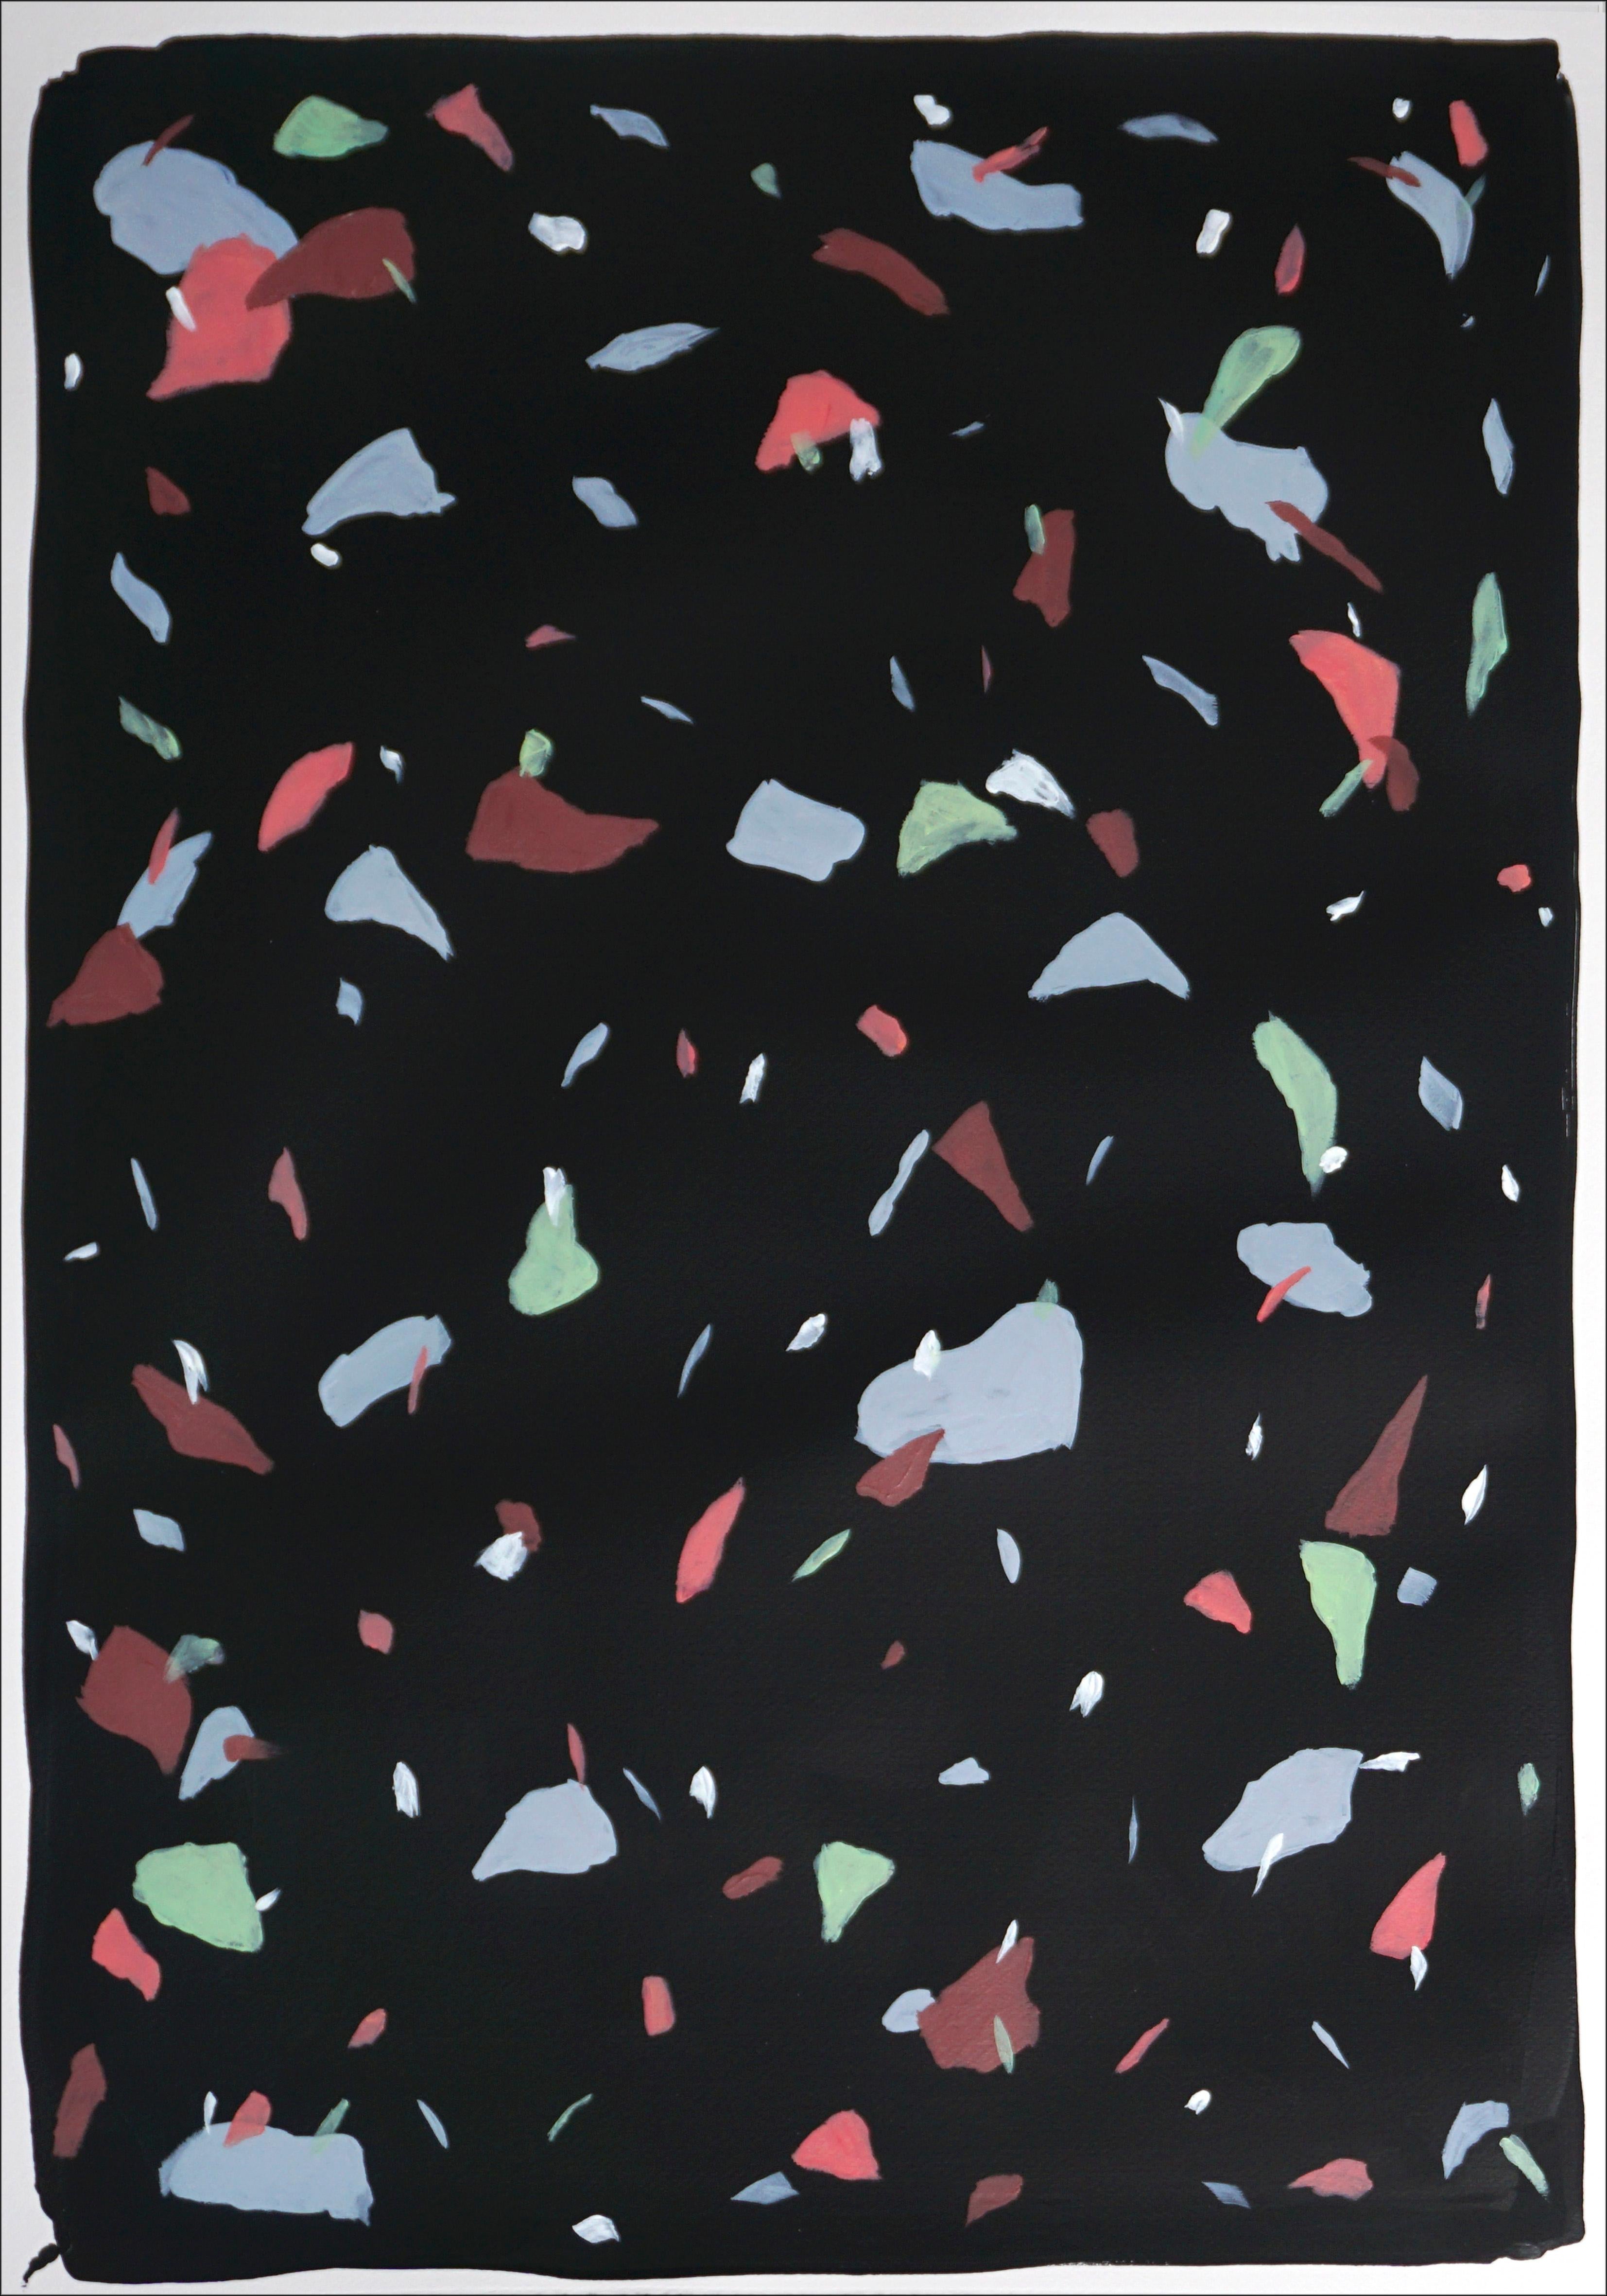 Schwarzer Terrazzo- Confetti in abstrakten Formen, Diptychon in Rosa und Blau in Metalltönen 2022 (Abstrakter Impressionismus), Painting, von Natalia Roman